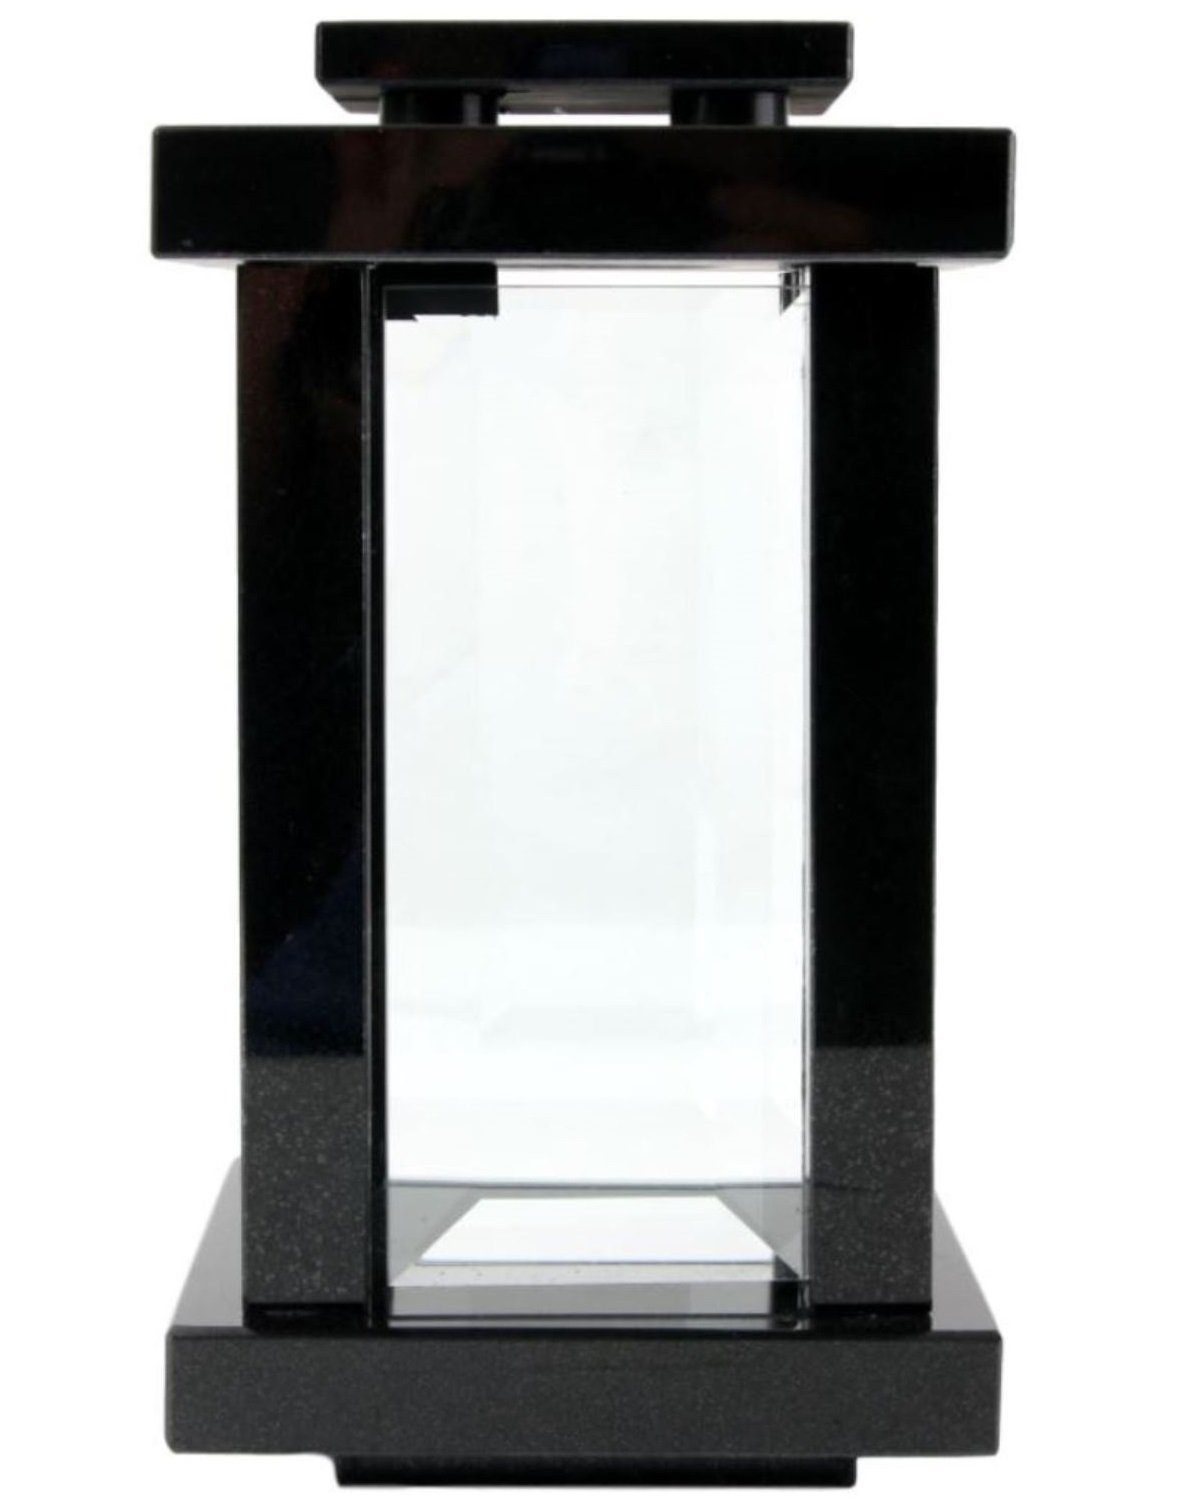 KOKA Dekoobjekt Grab-Lampe Granit Schwedisch Black, Grab-Licht, eckig,  modern, hochwertig, mit Glastür, witterungsbeständig und robust